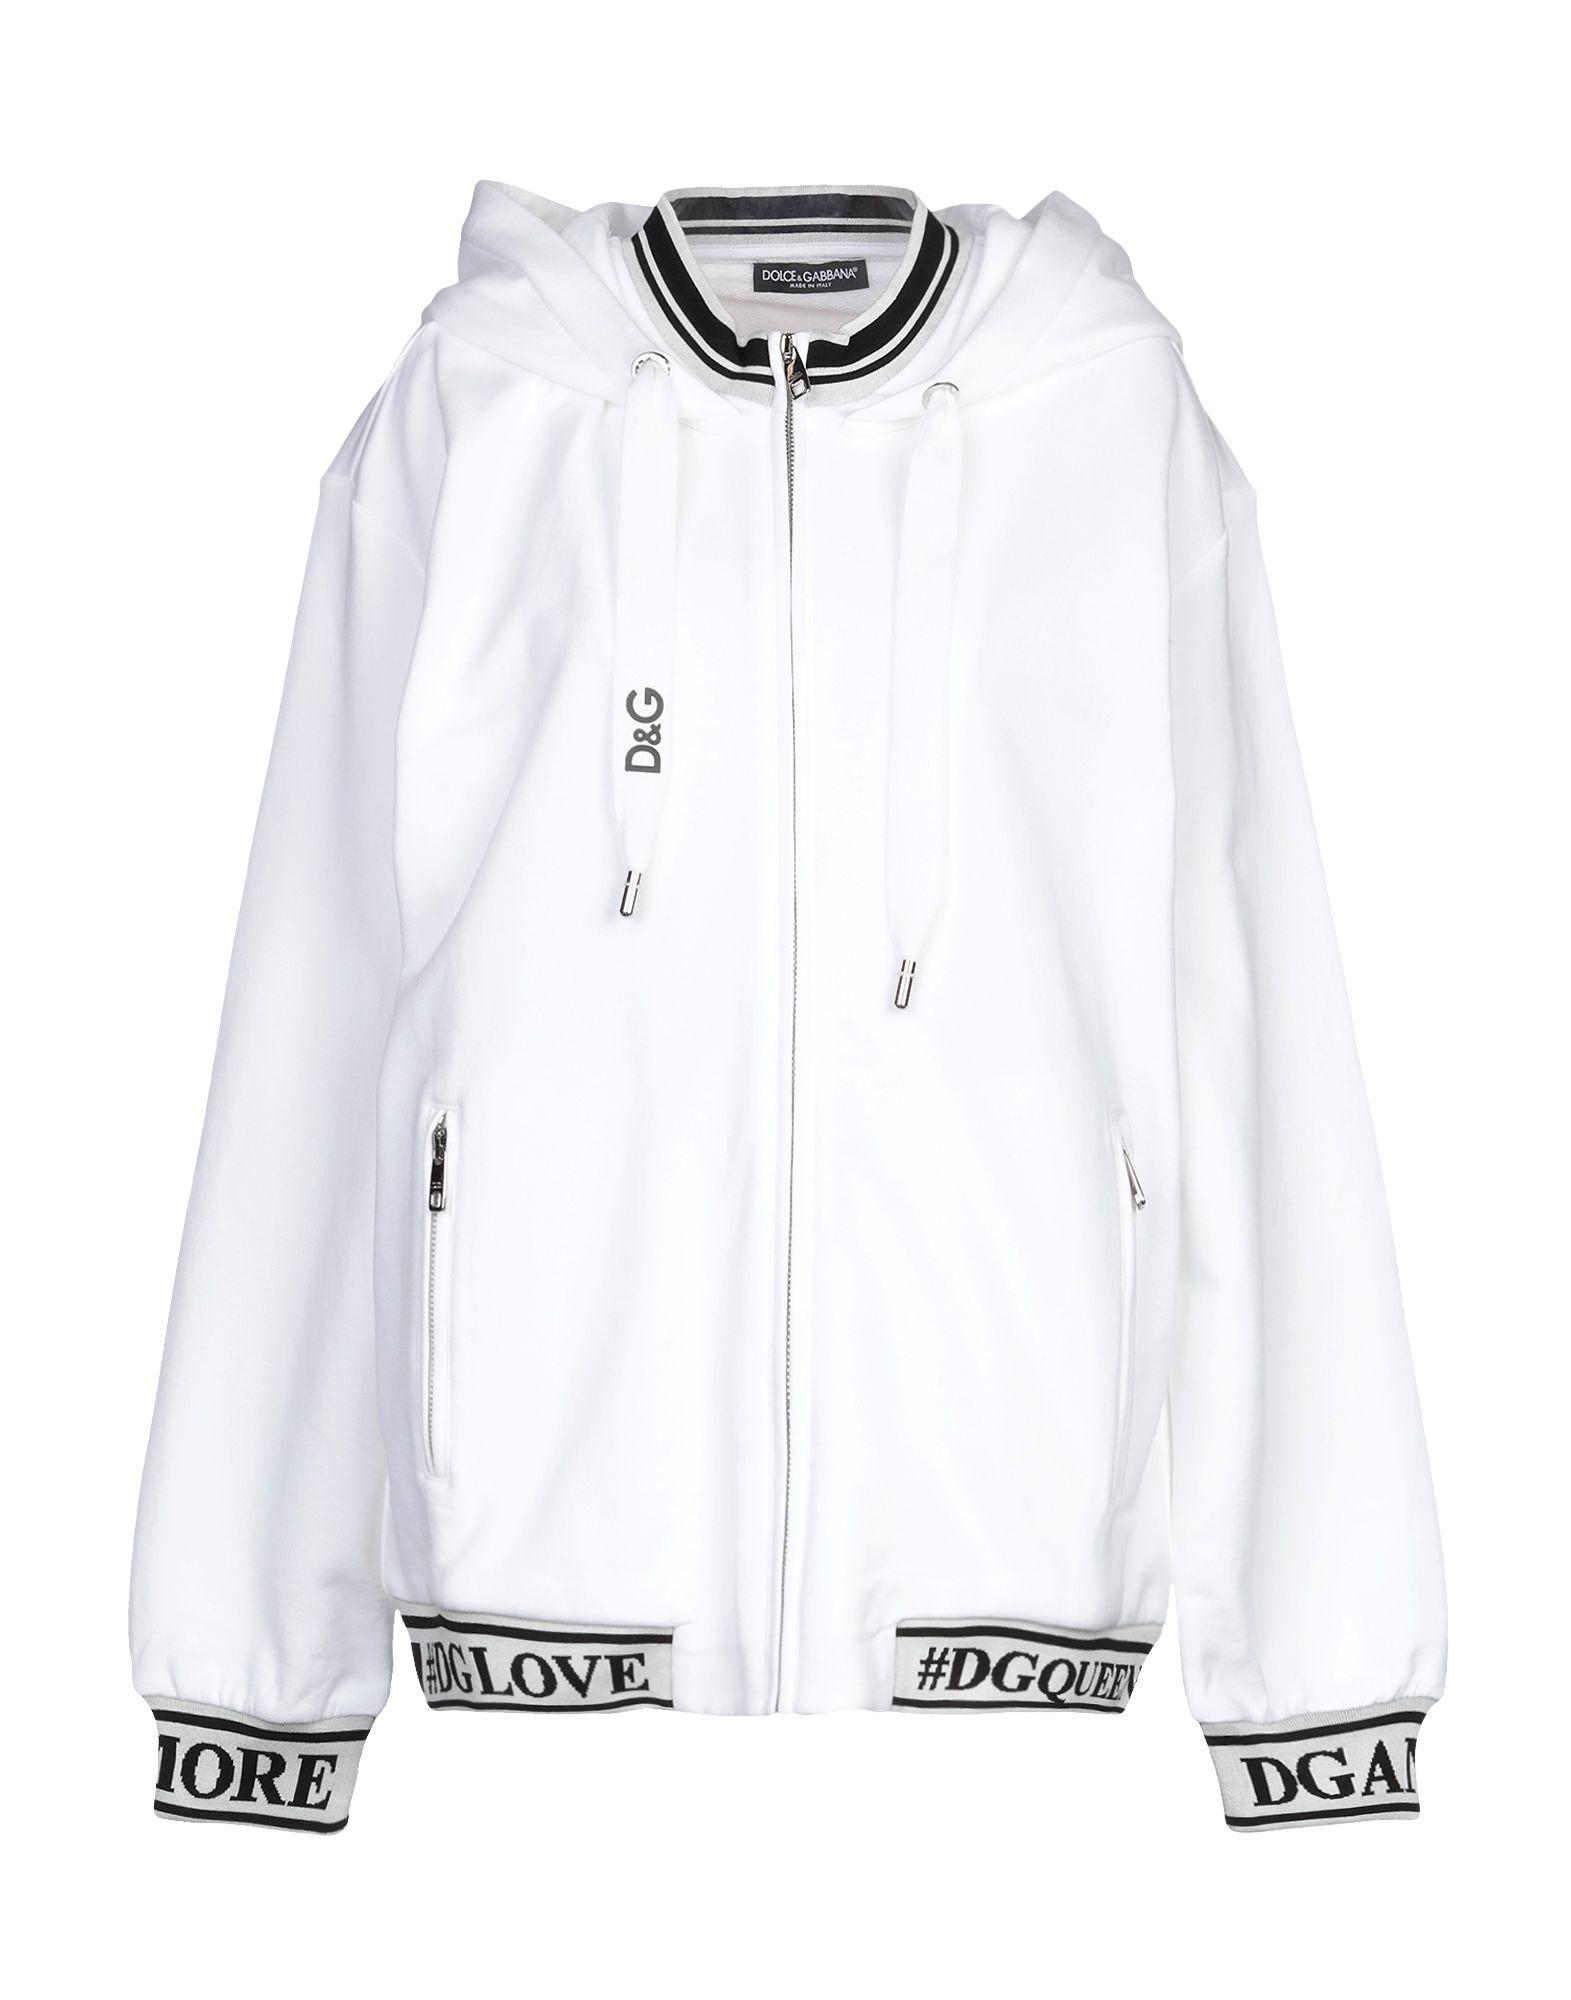 Dolce & Gabbana Cotton Sweatshirt in White - Lyst